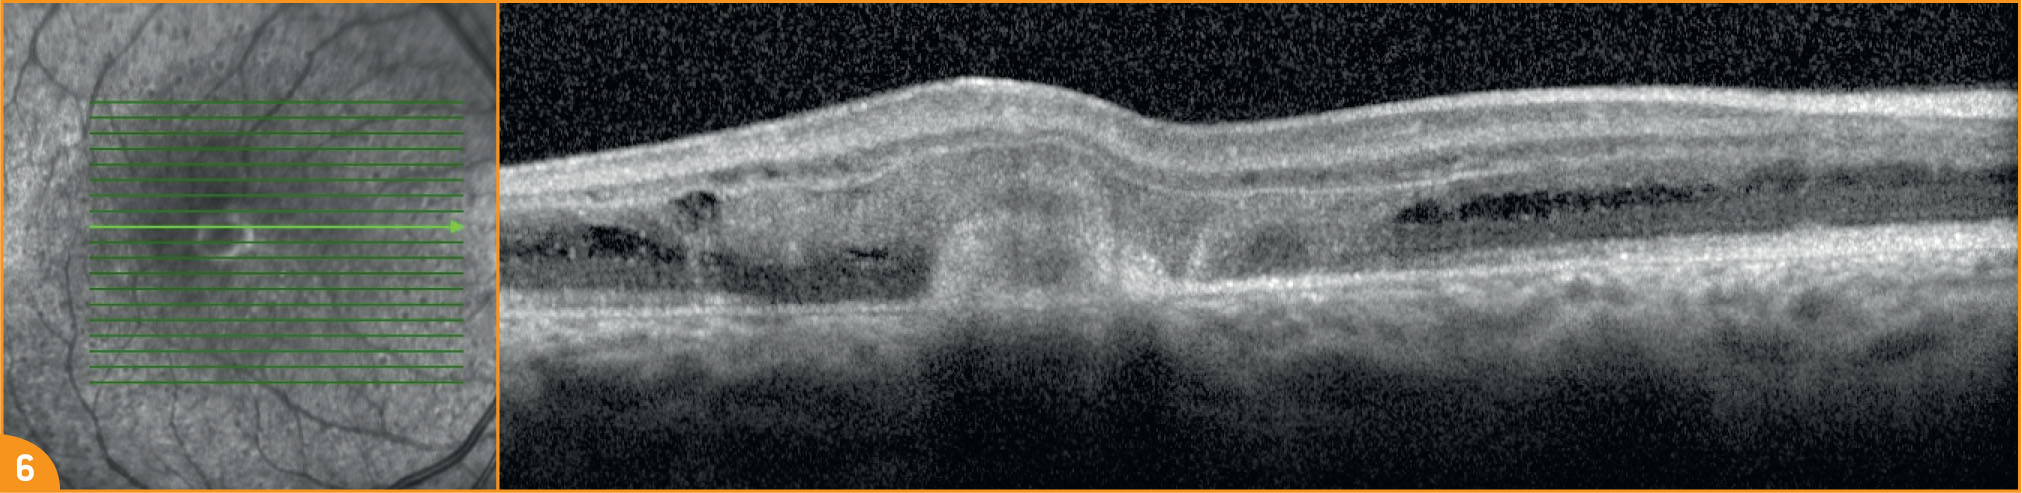 Une anastomose rétino-rétinienne chez un jeune garçon de 10 ans - Figure 6